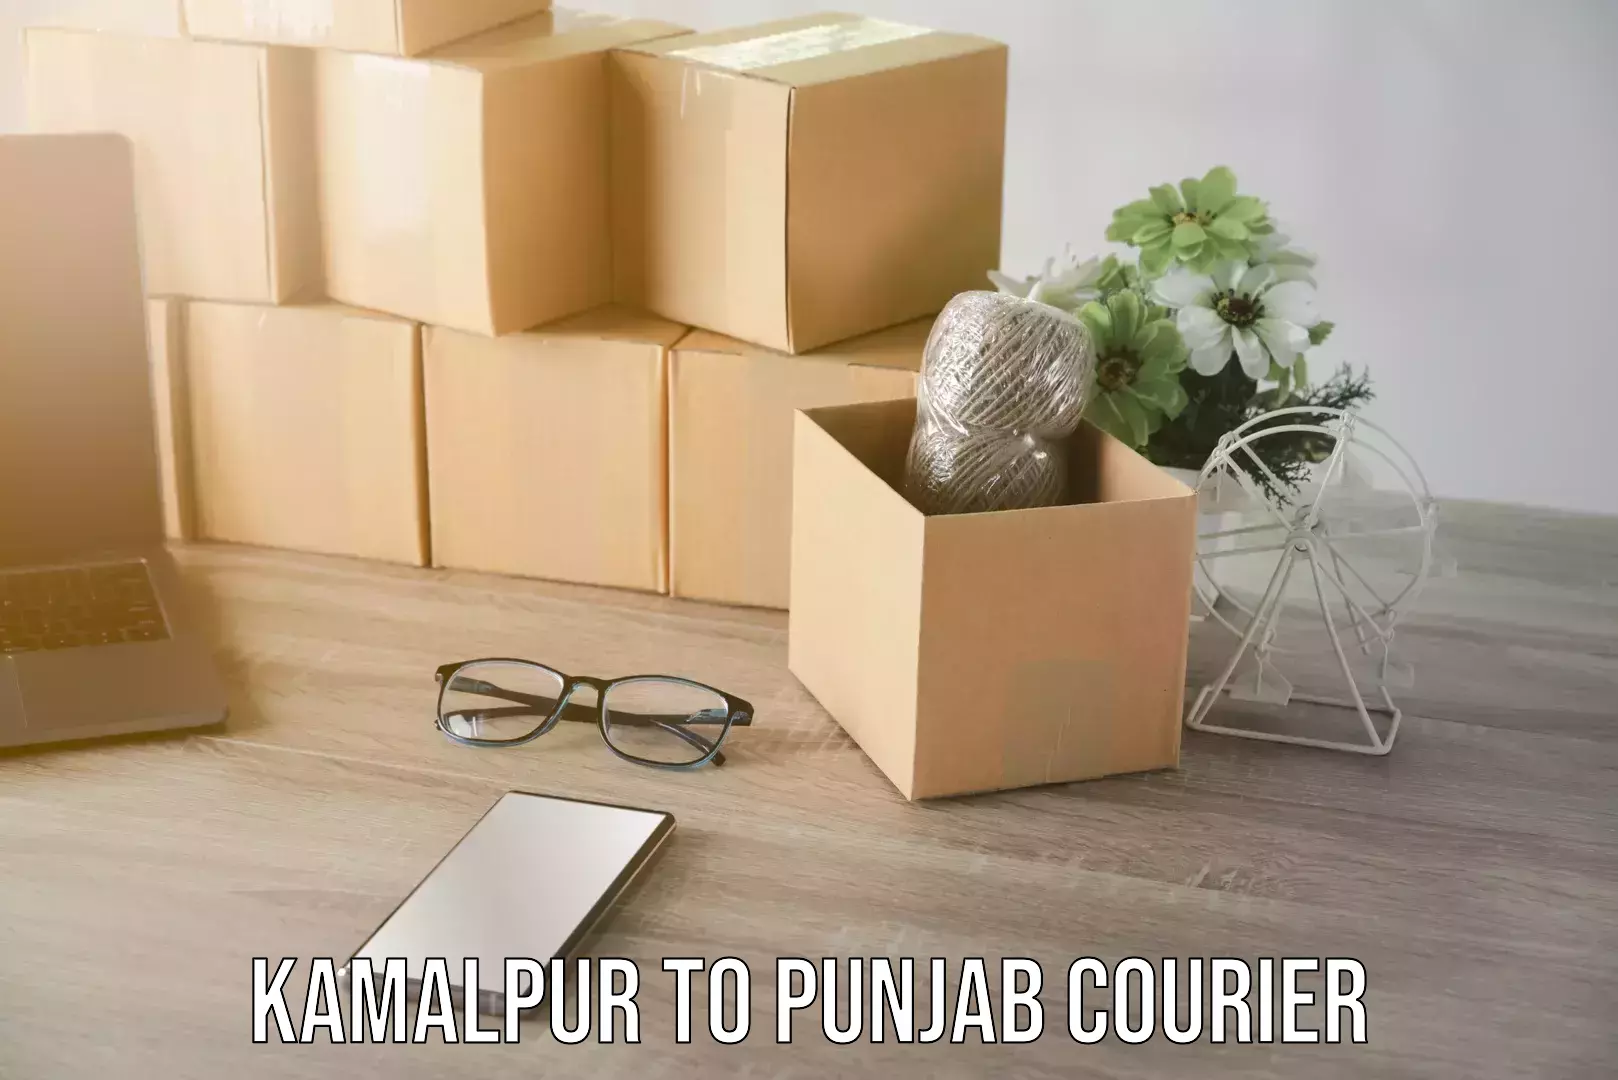 Express package handling Kamalpur to Punjab